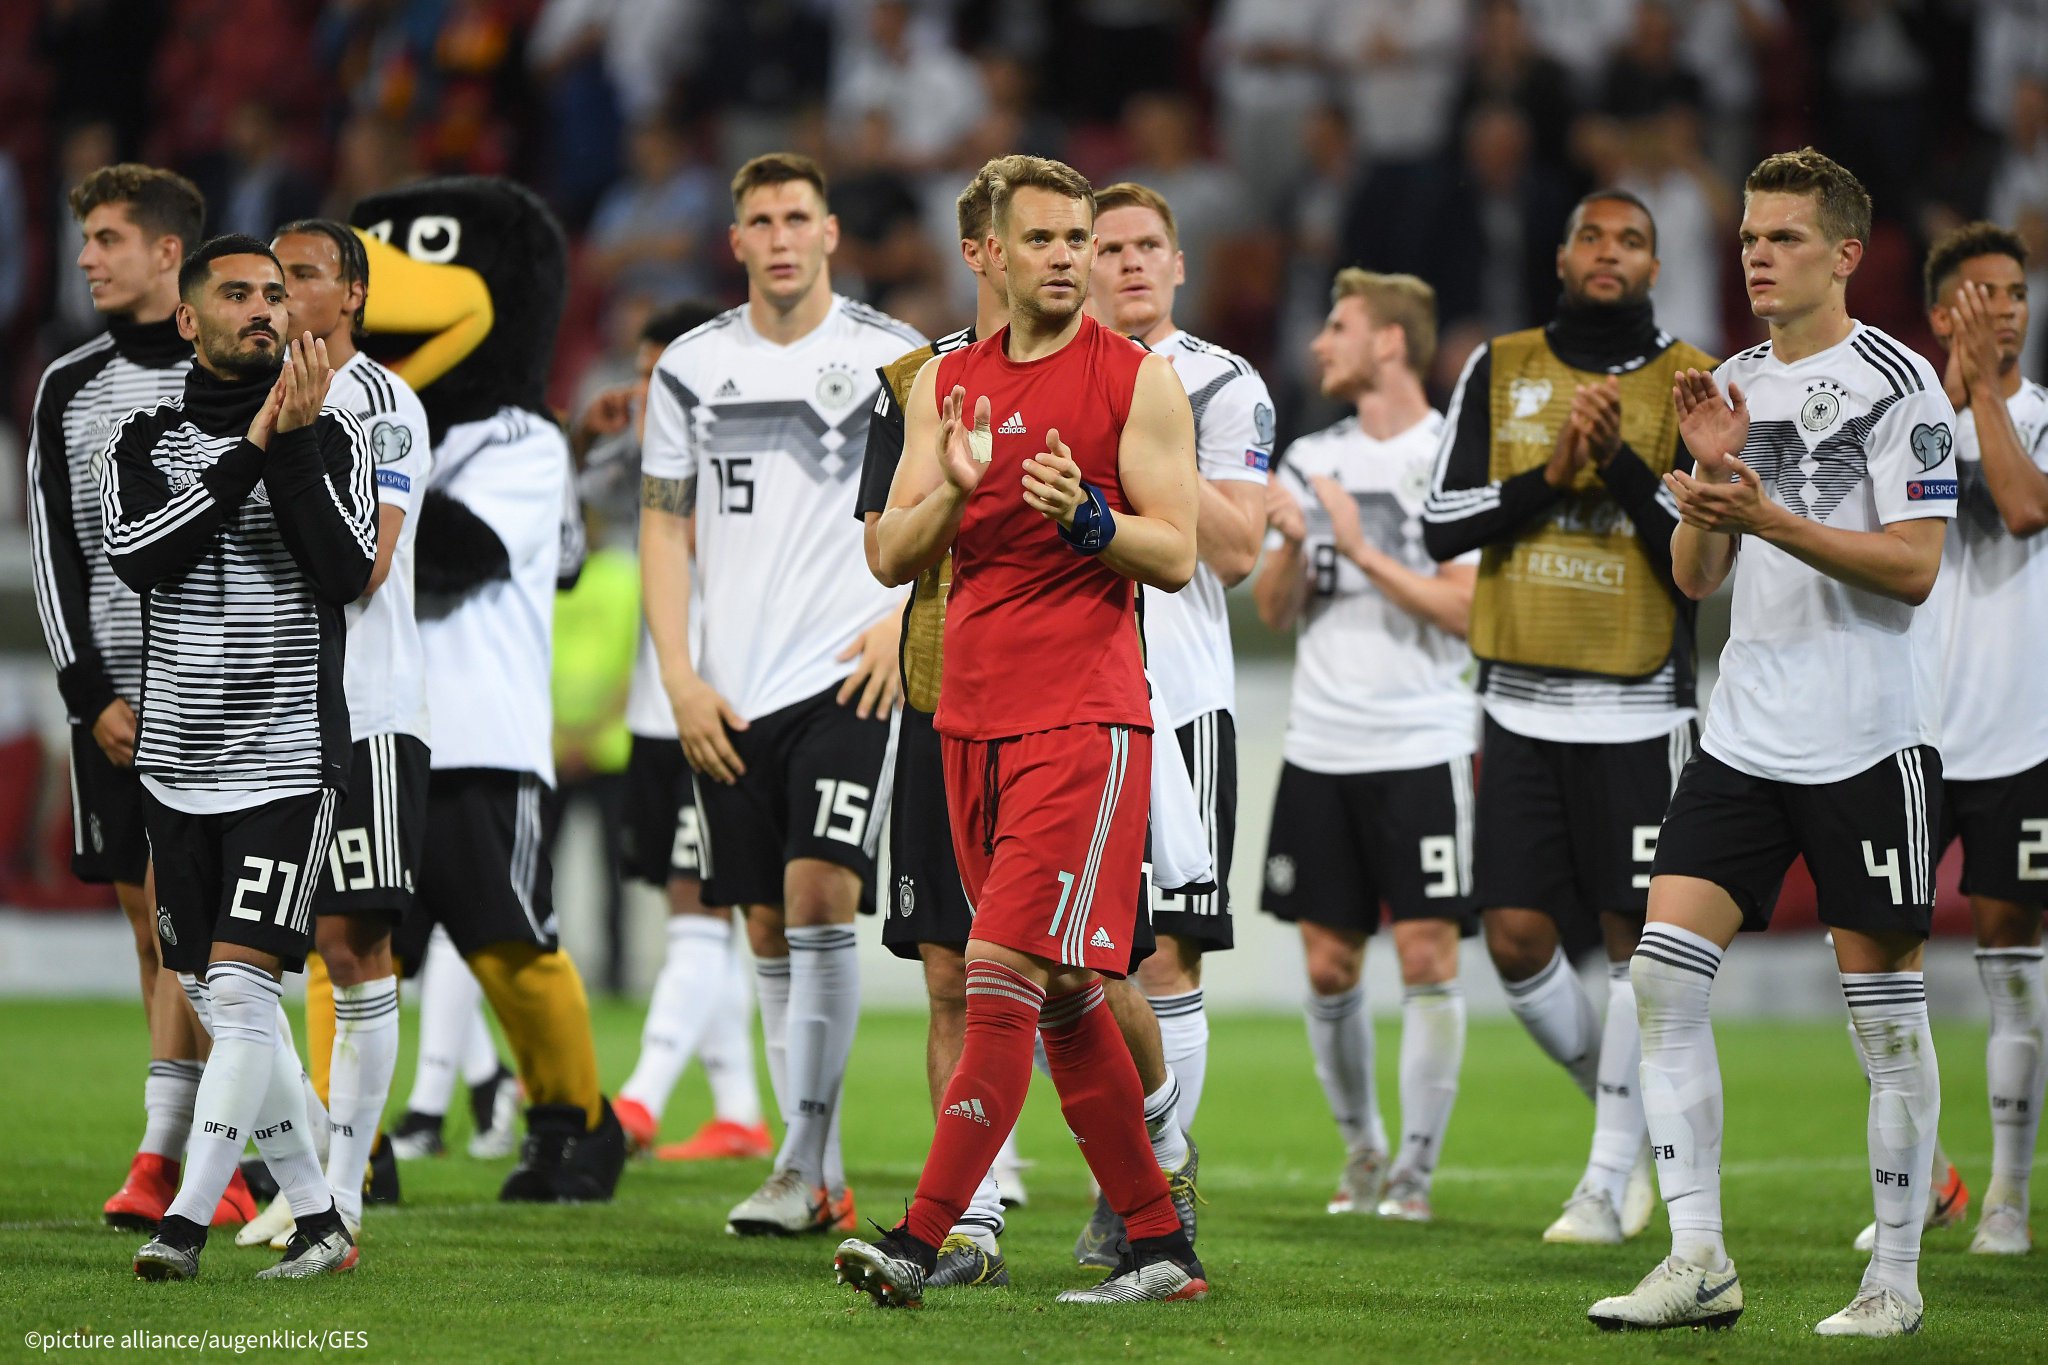 ドイツ大使館 Uefa Euroの予選でドイツ代表がエストニアと対戦し 8 0で快勝しました 絶対的守護神 ゴールキーパーのノイアー選手 身長193cm はこれで代表試合目にして37回目のクリーンシート 無失点の完封勝利で これまで40年破られ